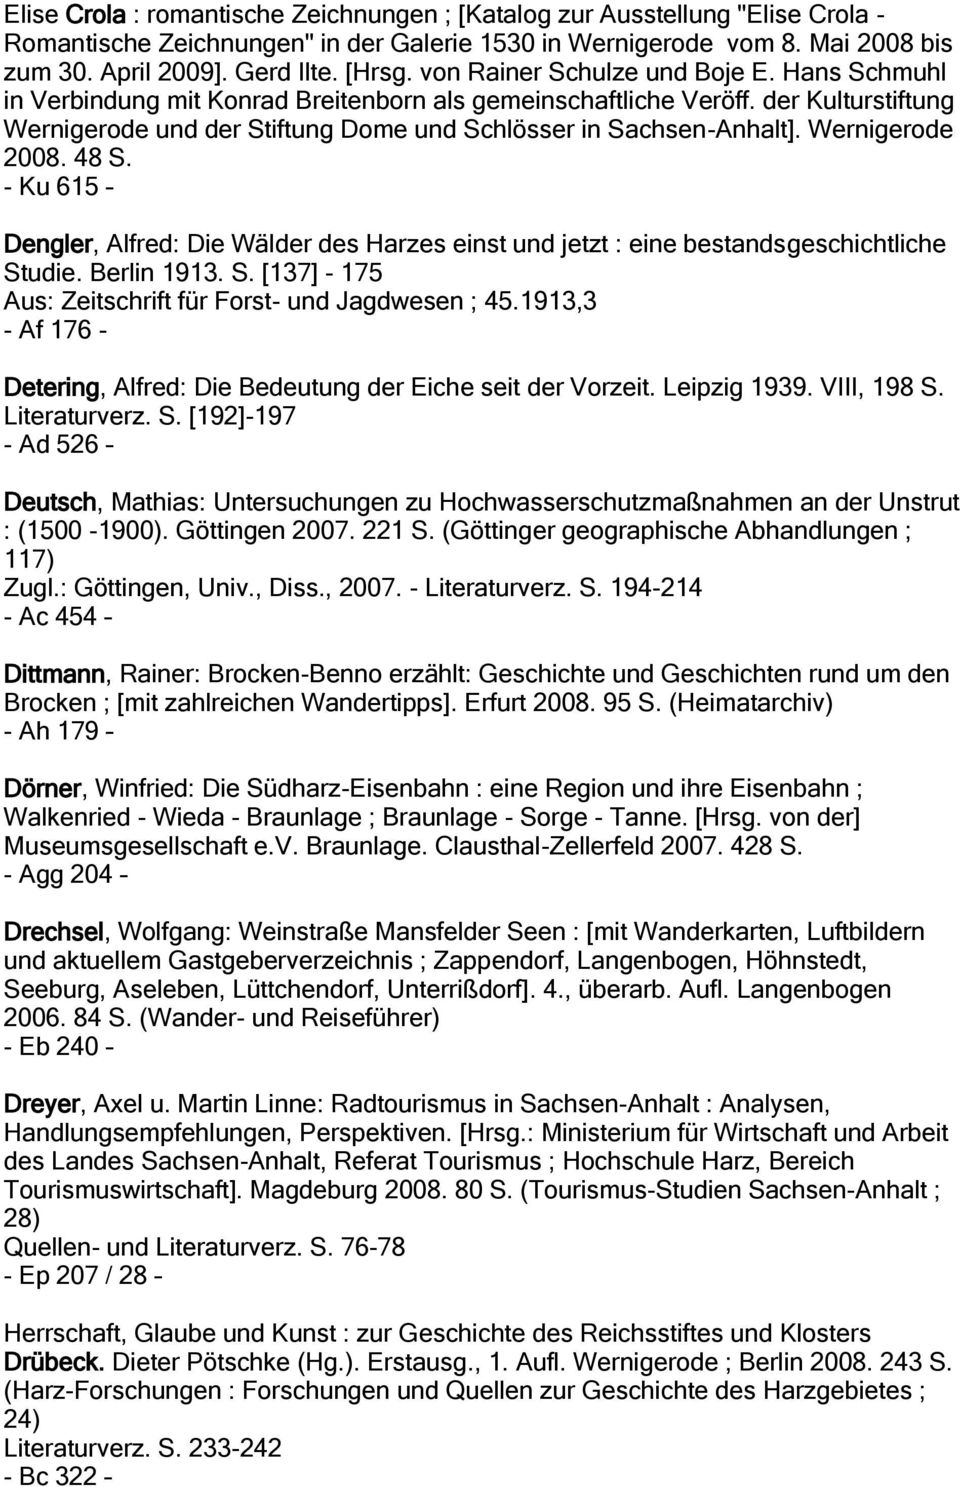 Wernigerode 2008. 48 S. - Ku 615 Dengler, Alfred: Die Wälder des Harzes einst und jetzt : eine bestandsgeschichtliche Studie. Berlin 1913. S. [137] - 175 Aus: Zeitschrift für Forst- und Jagdwesen ; 45.